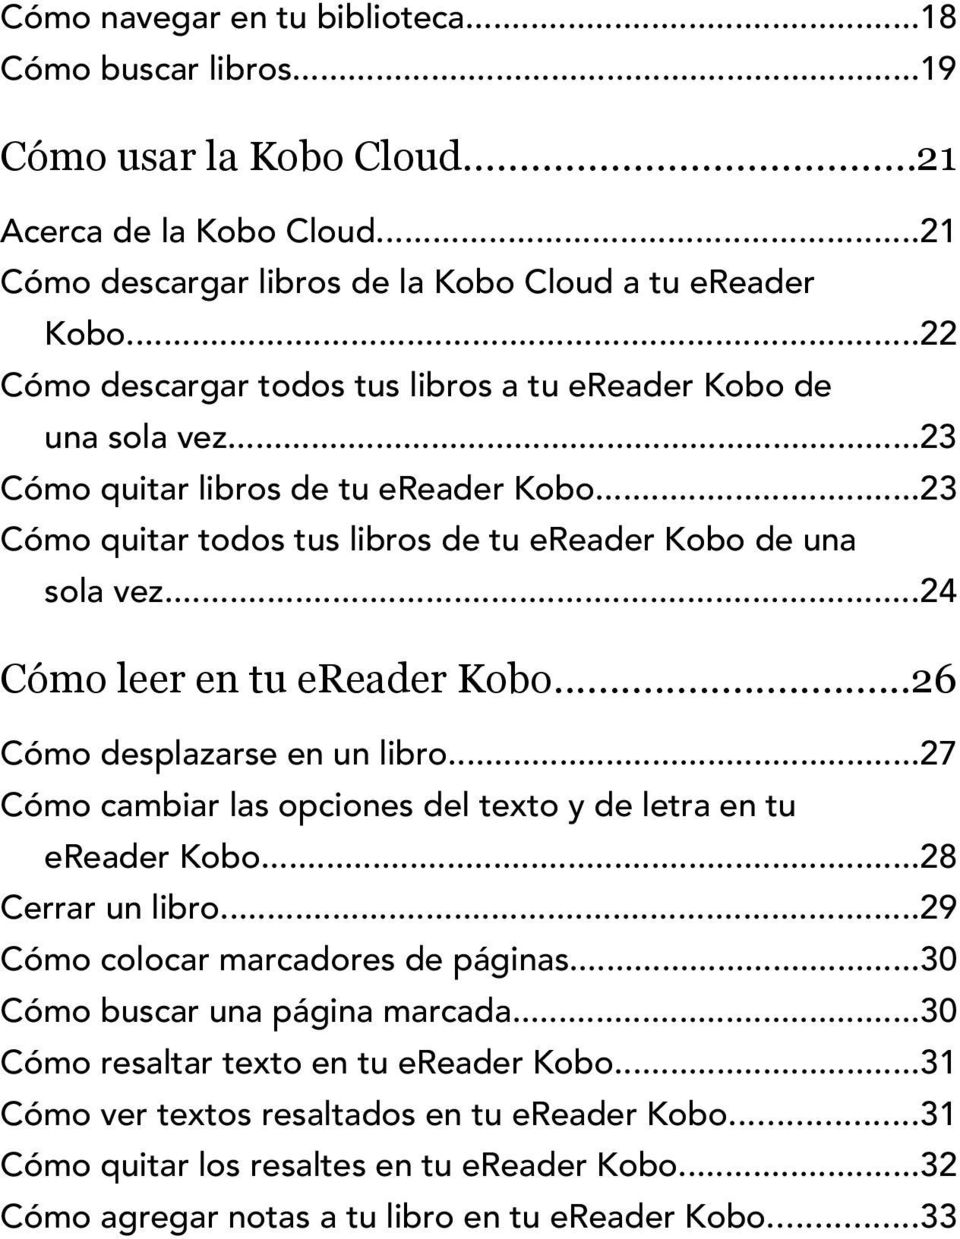 ..24 Cómo leer en tu ereader Kobo...26 Cómo desplazarse en un libro...27 Cómo cambiar las opciones del texto y de letra en tu ereader Kobo...28 Cerrar un libro...29 Cómo colocar marcadores de páginas.